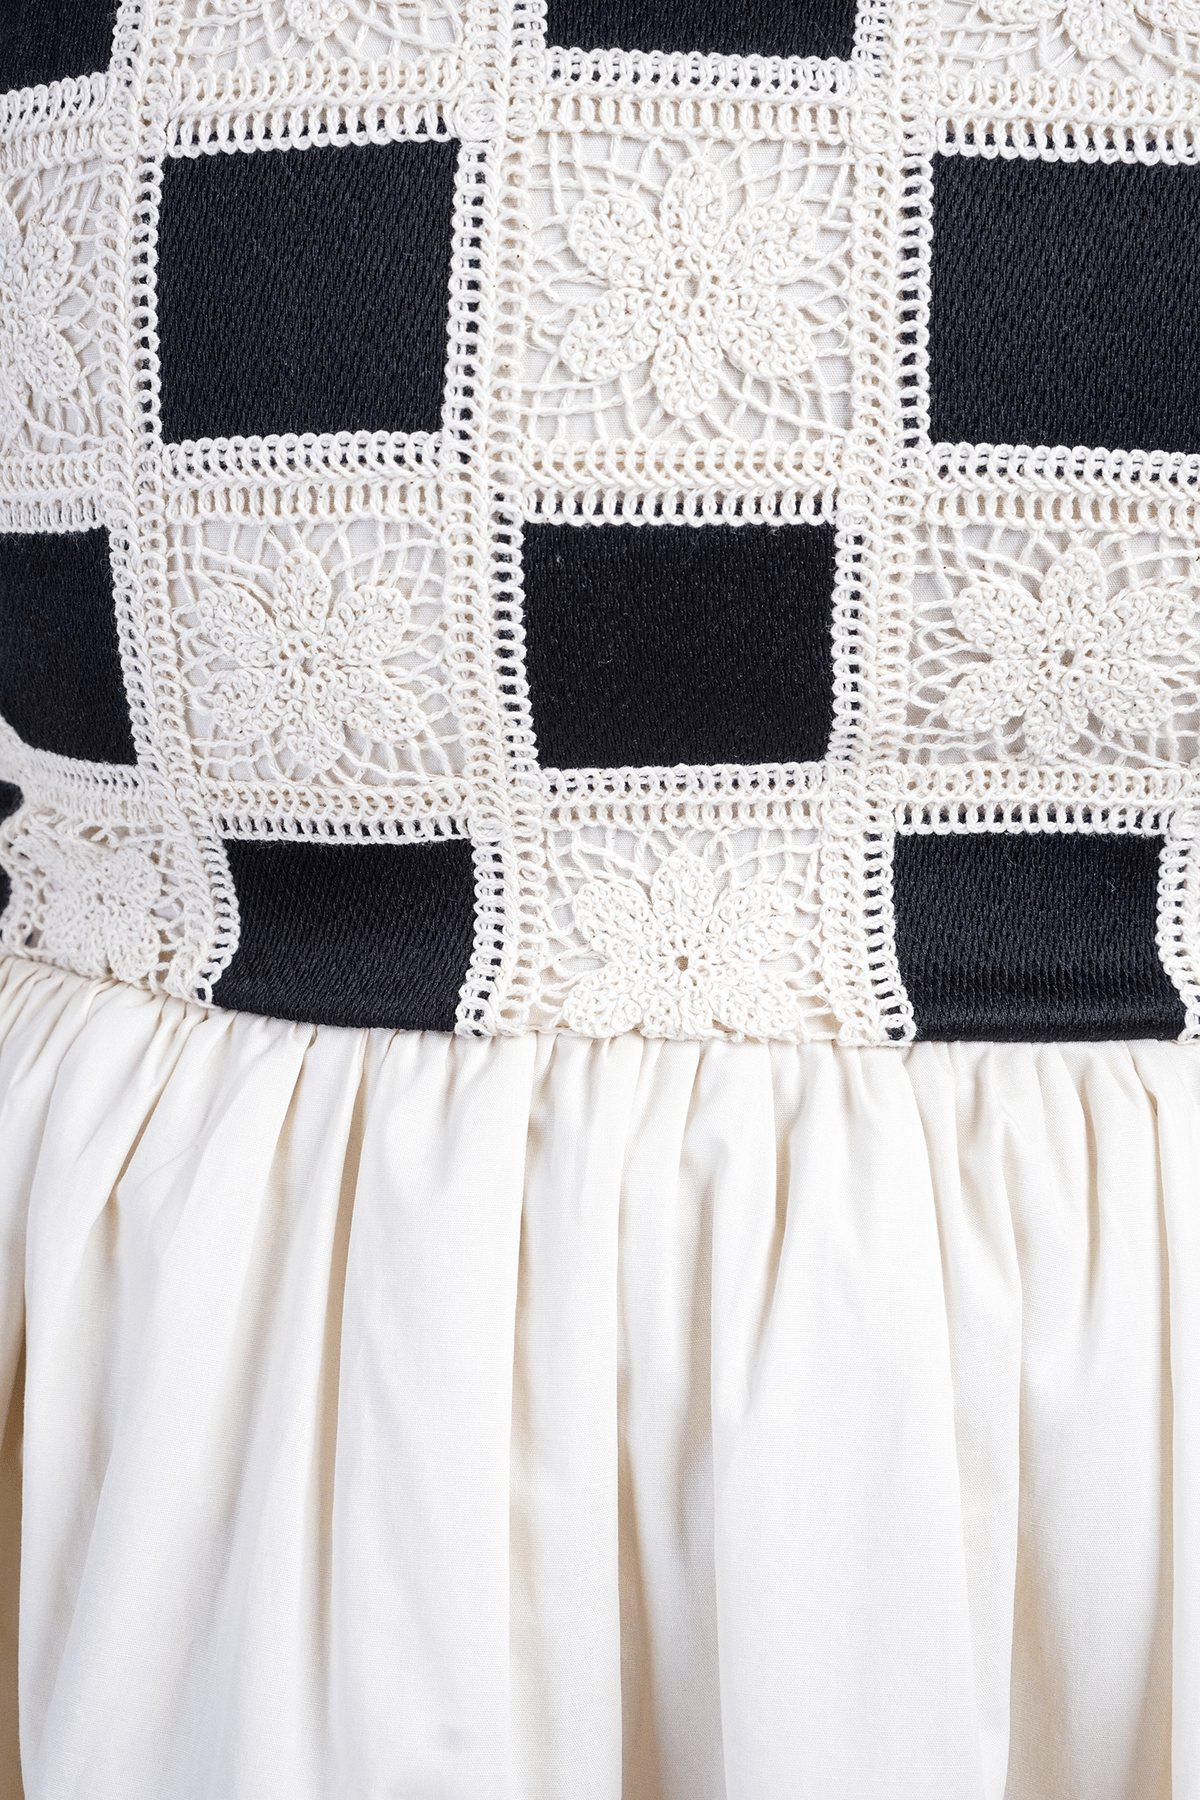 DCD DRESSES Black/Ivory Crochet Dress